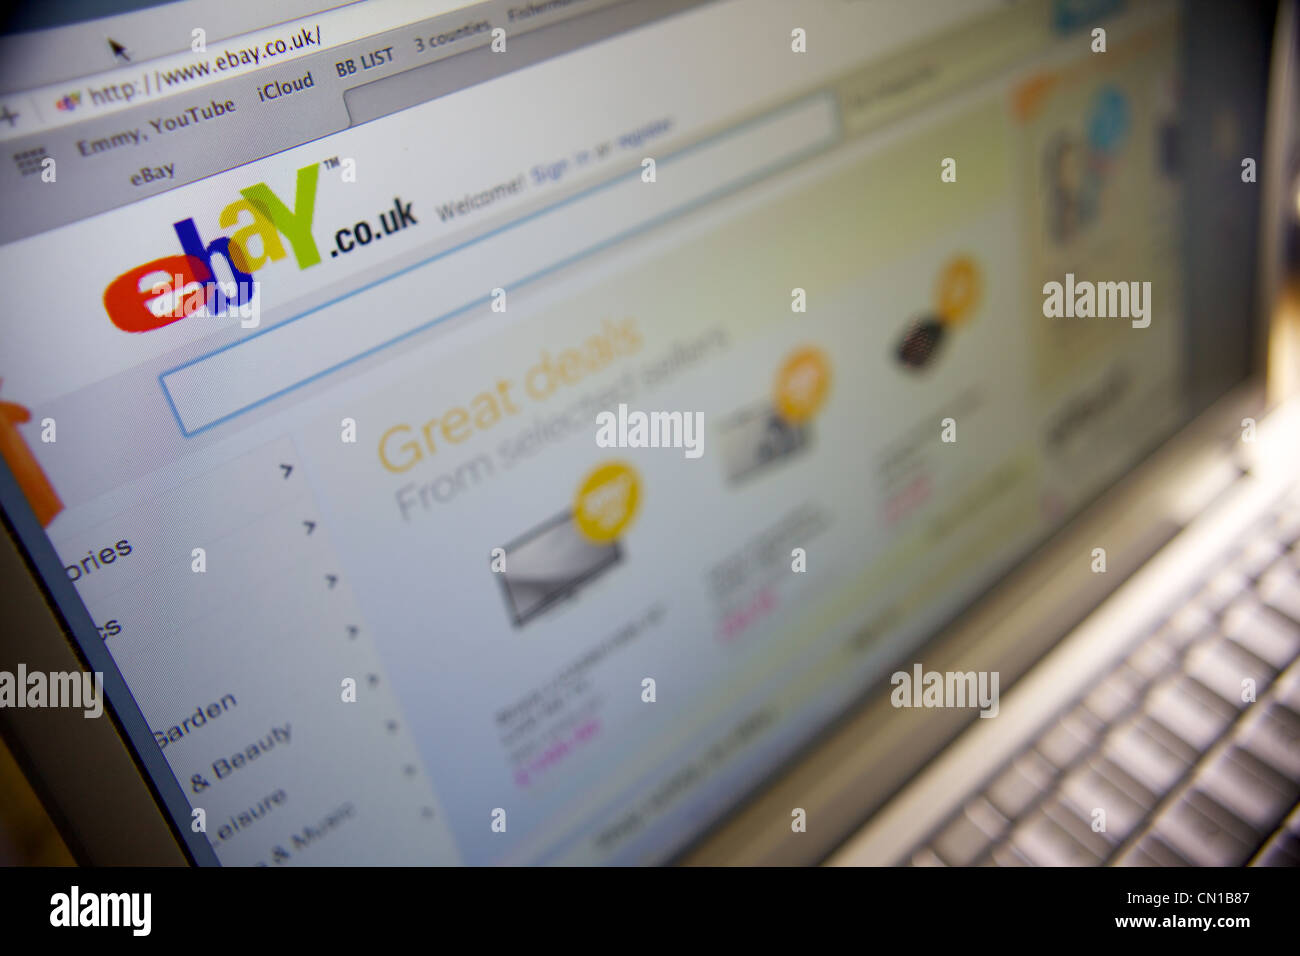 Ebay web page on a laptop Stock Photo